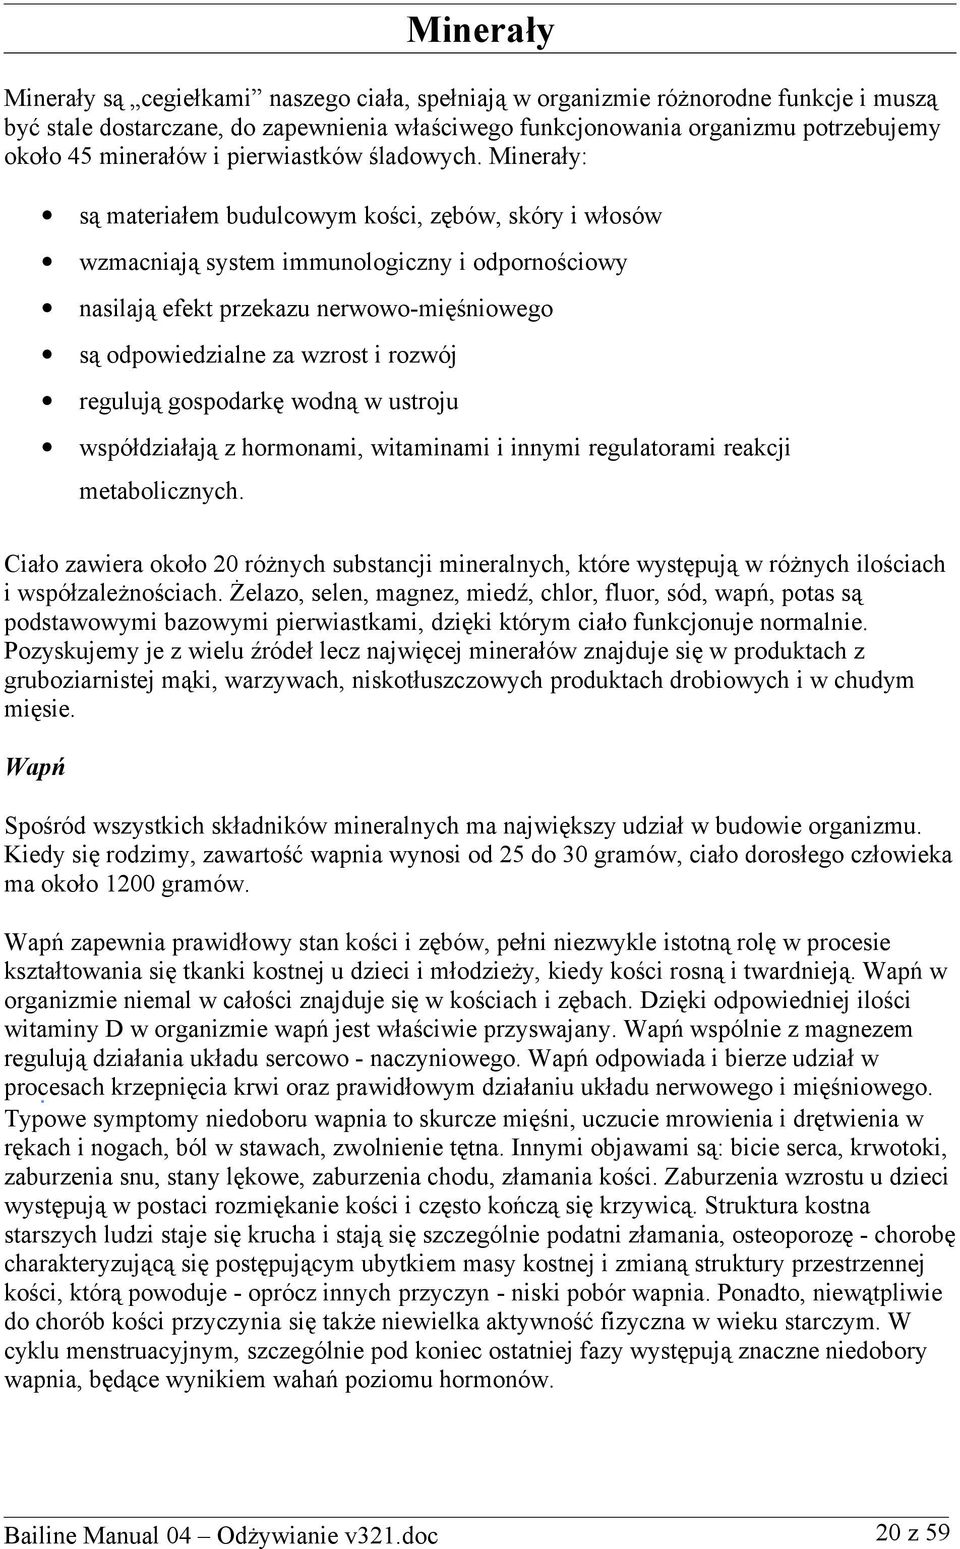 Bailine Manual 04: Odżywianie - PDF Darmowe pobieranie